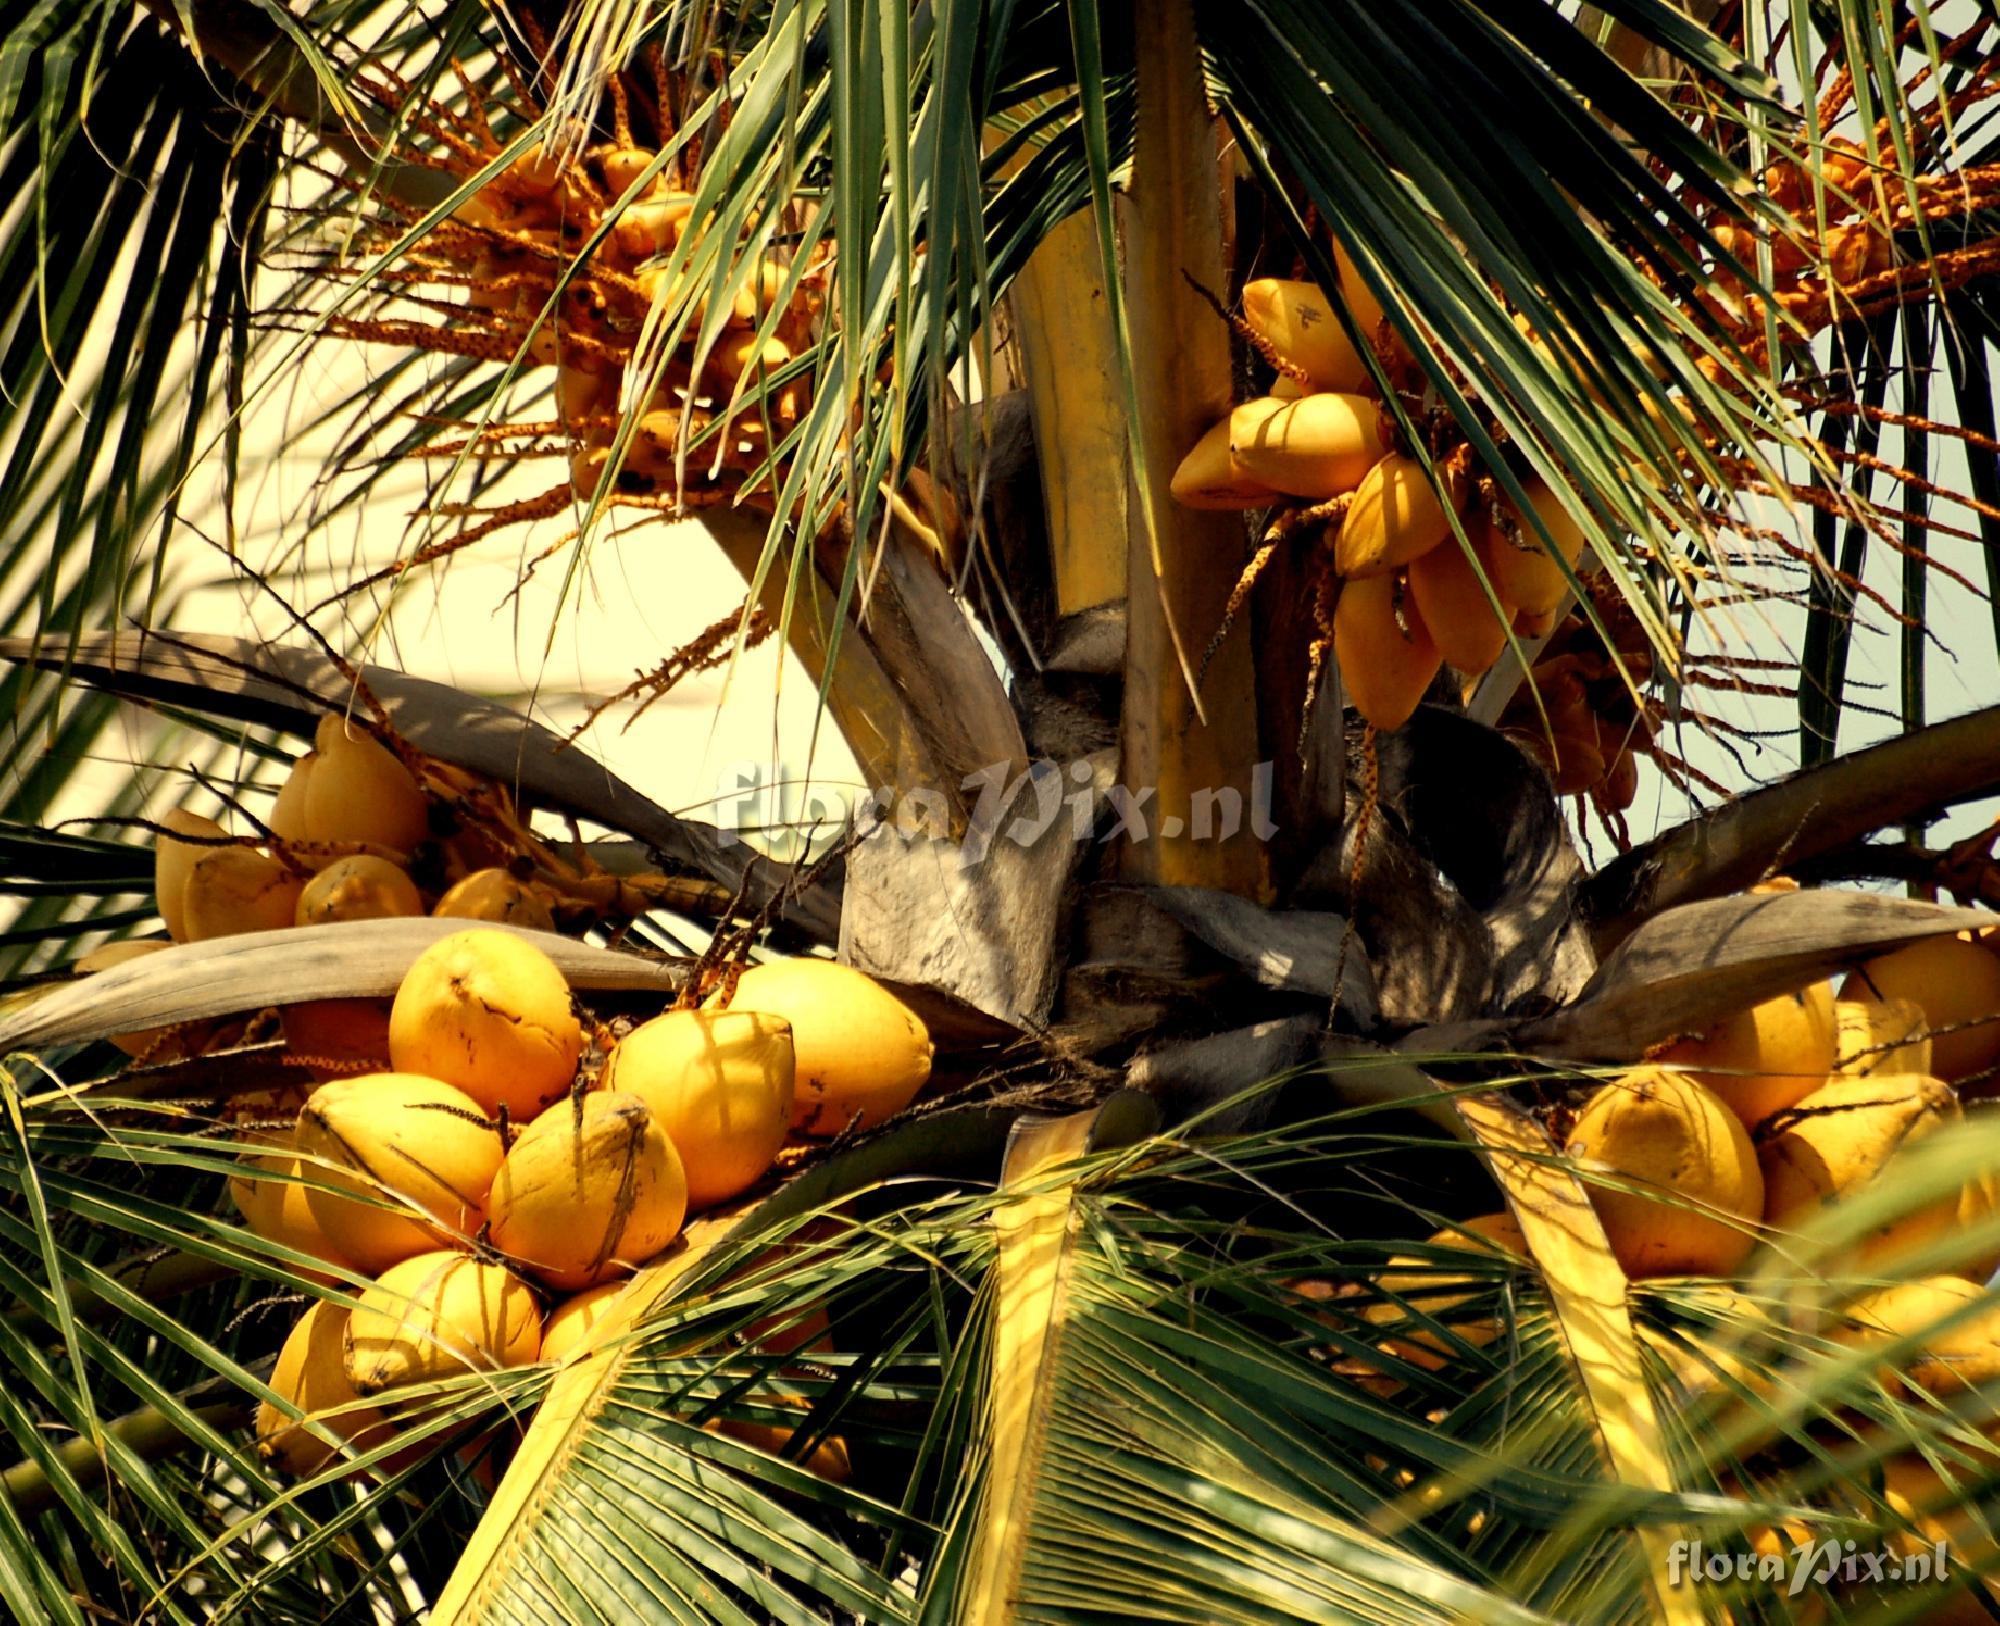 Cocos nucifera  Coconut palm